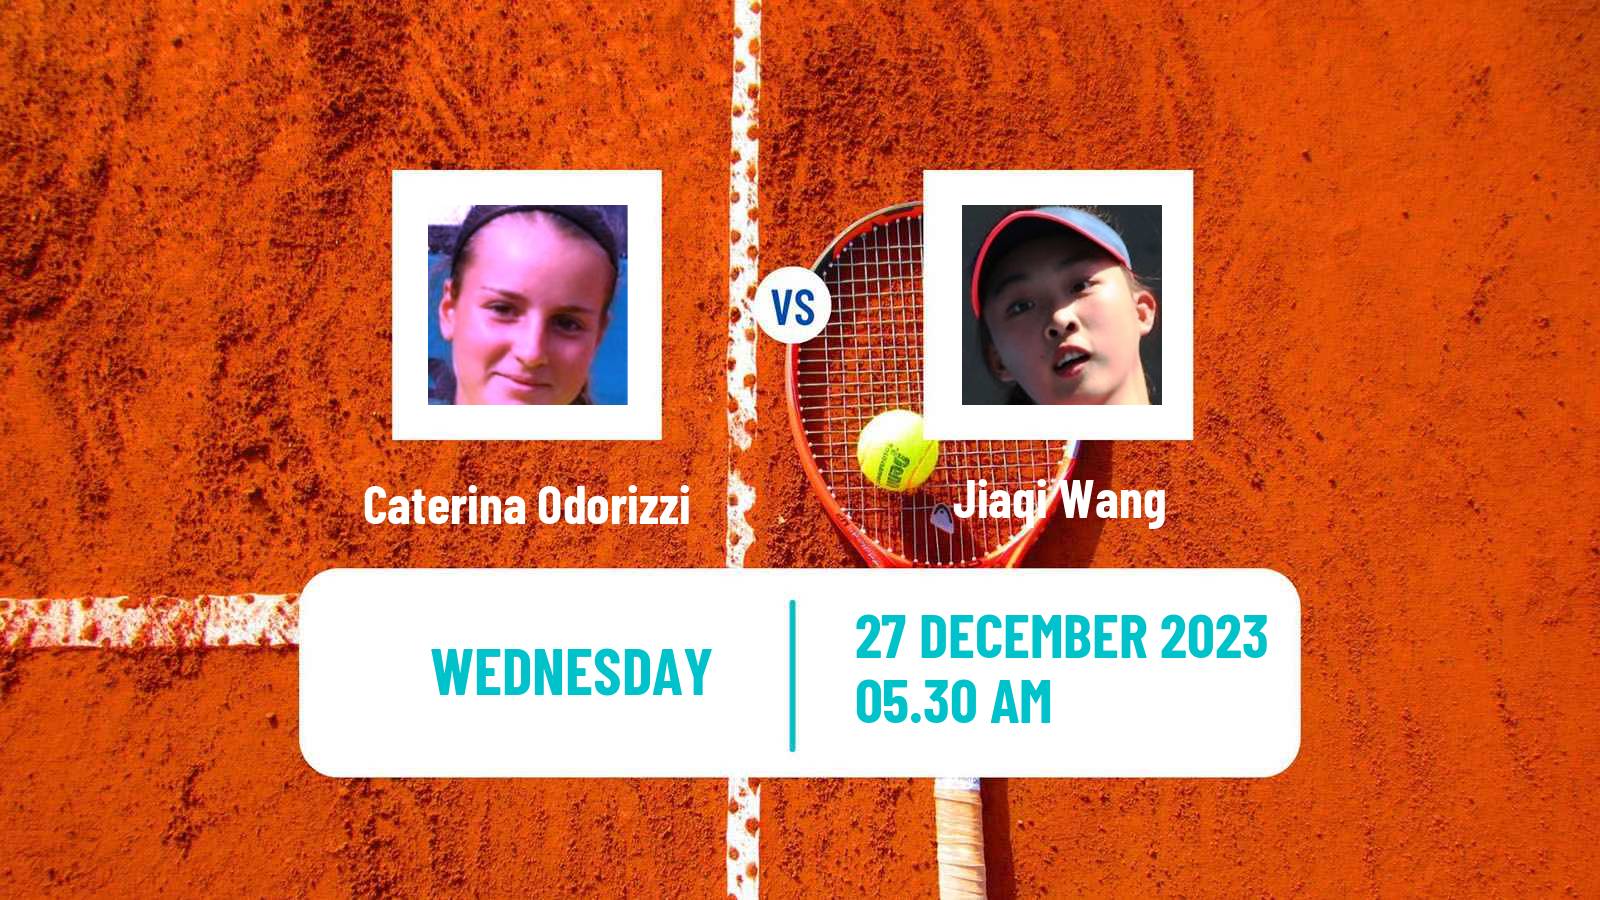 Tennis ITF W15 Monastir 44 Women Caterina Odorizzi - Jiaqi Wang